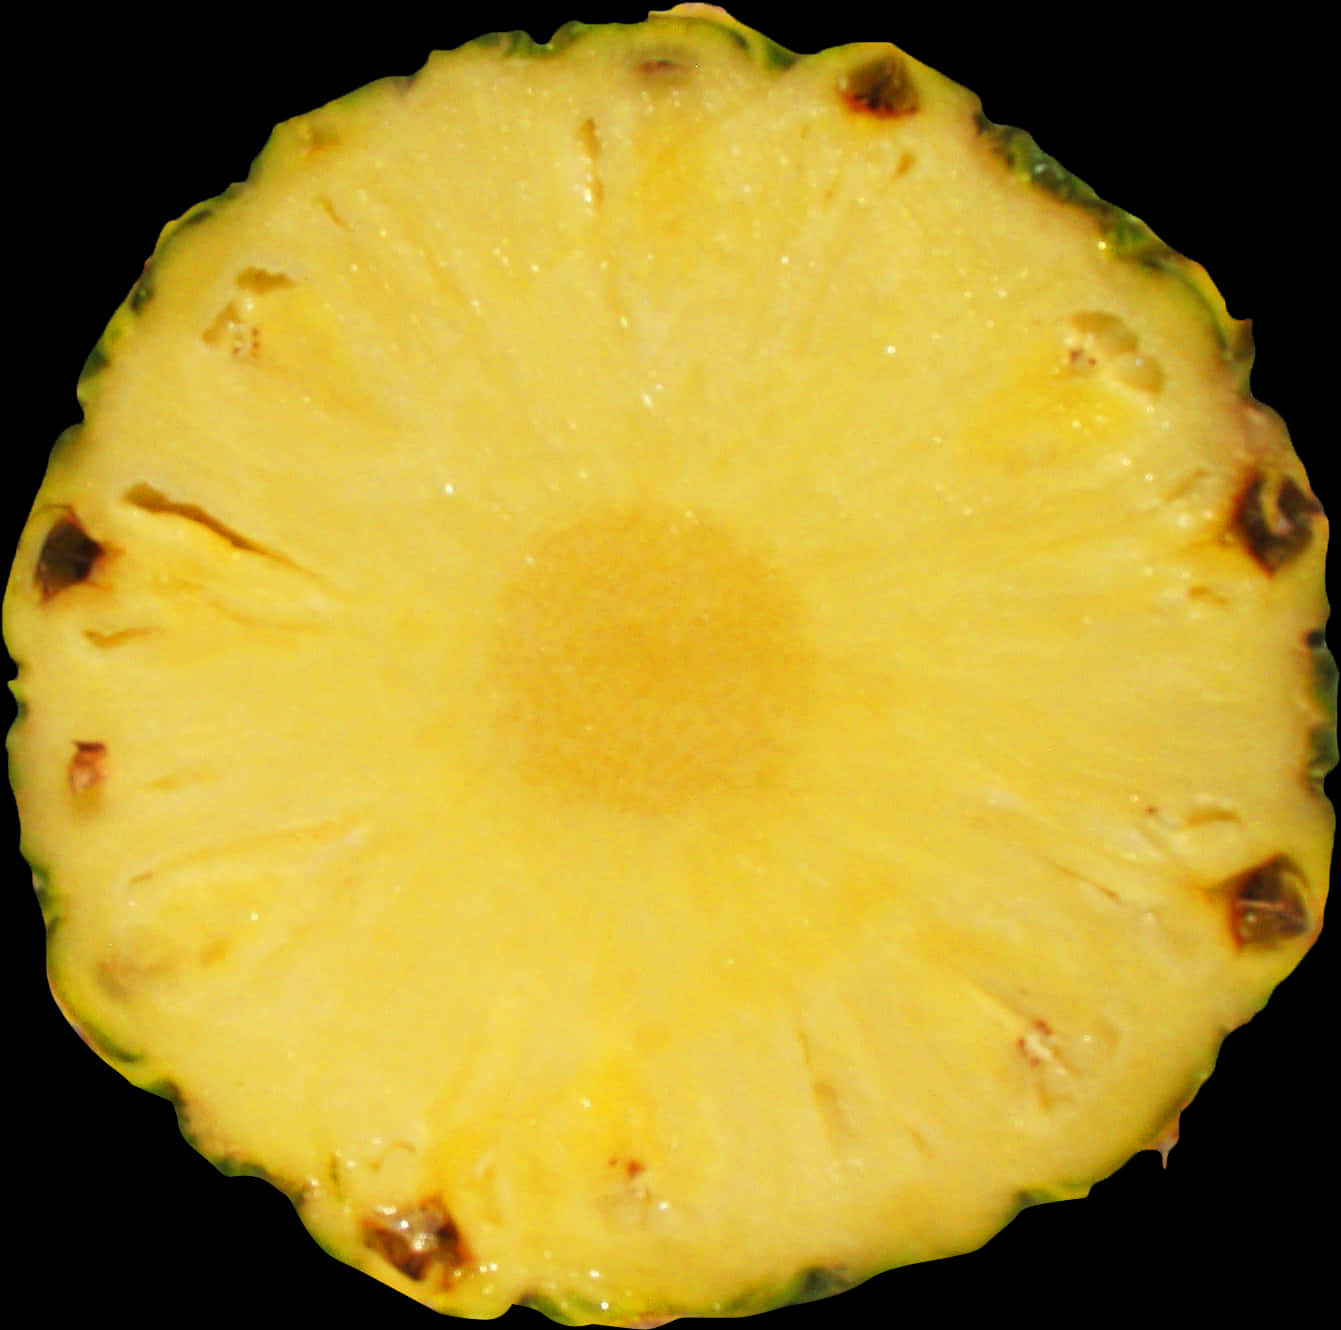 Fresh Pineapple Slice Cross Section.jpg